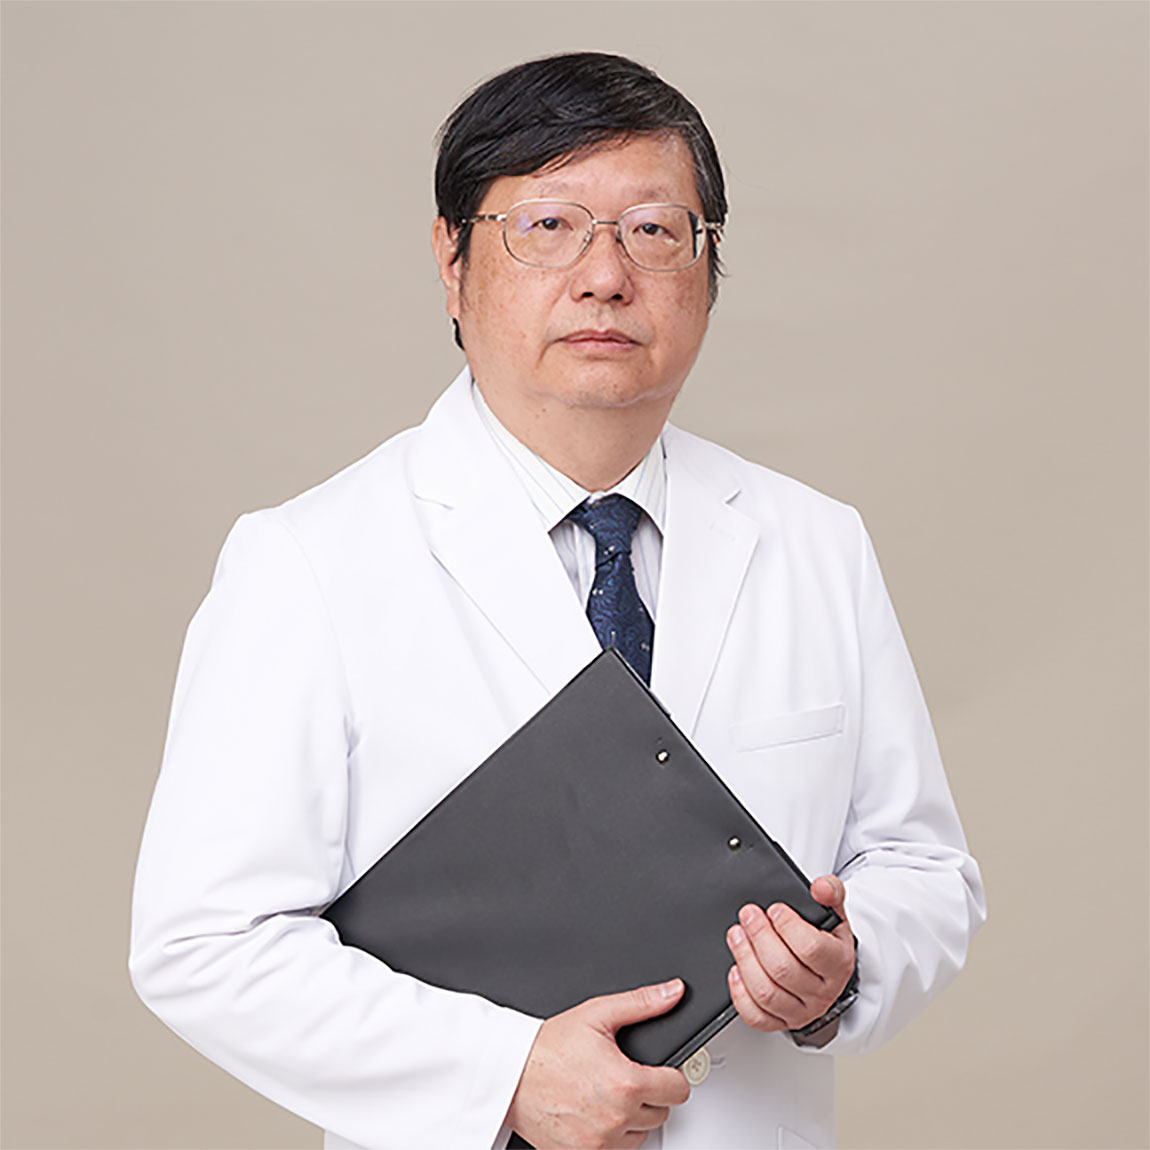 胡玉铭 Yu-Ming Hu, MD.